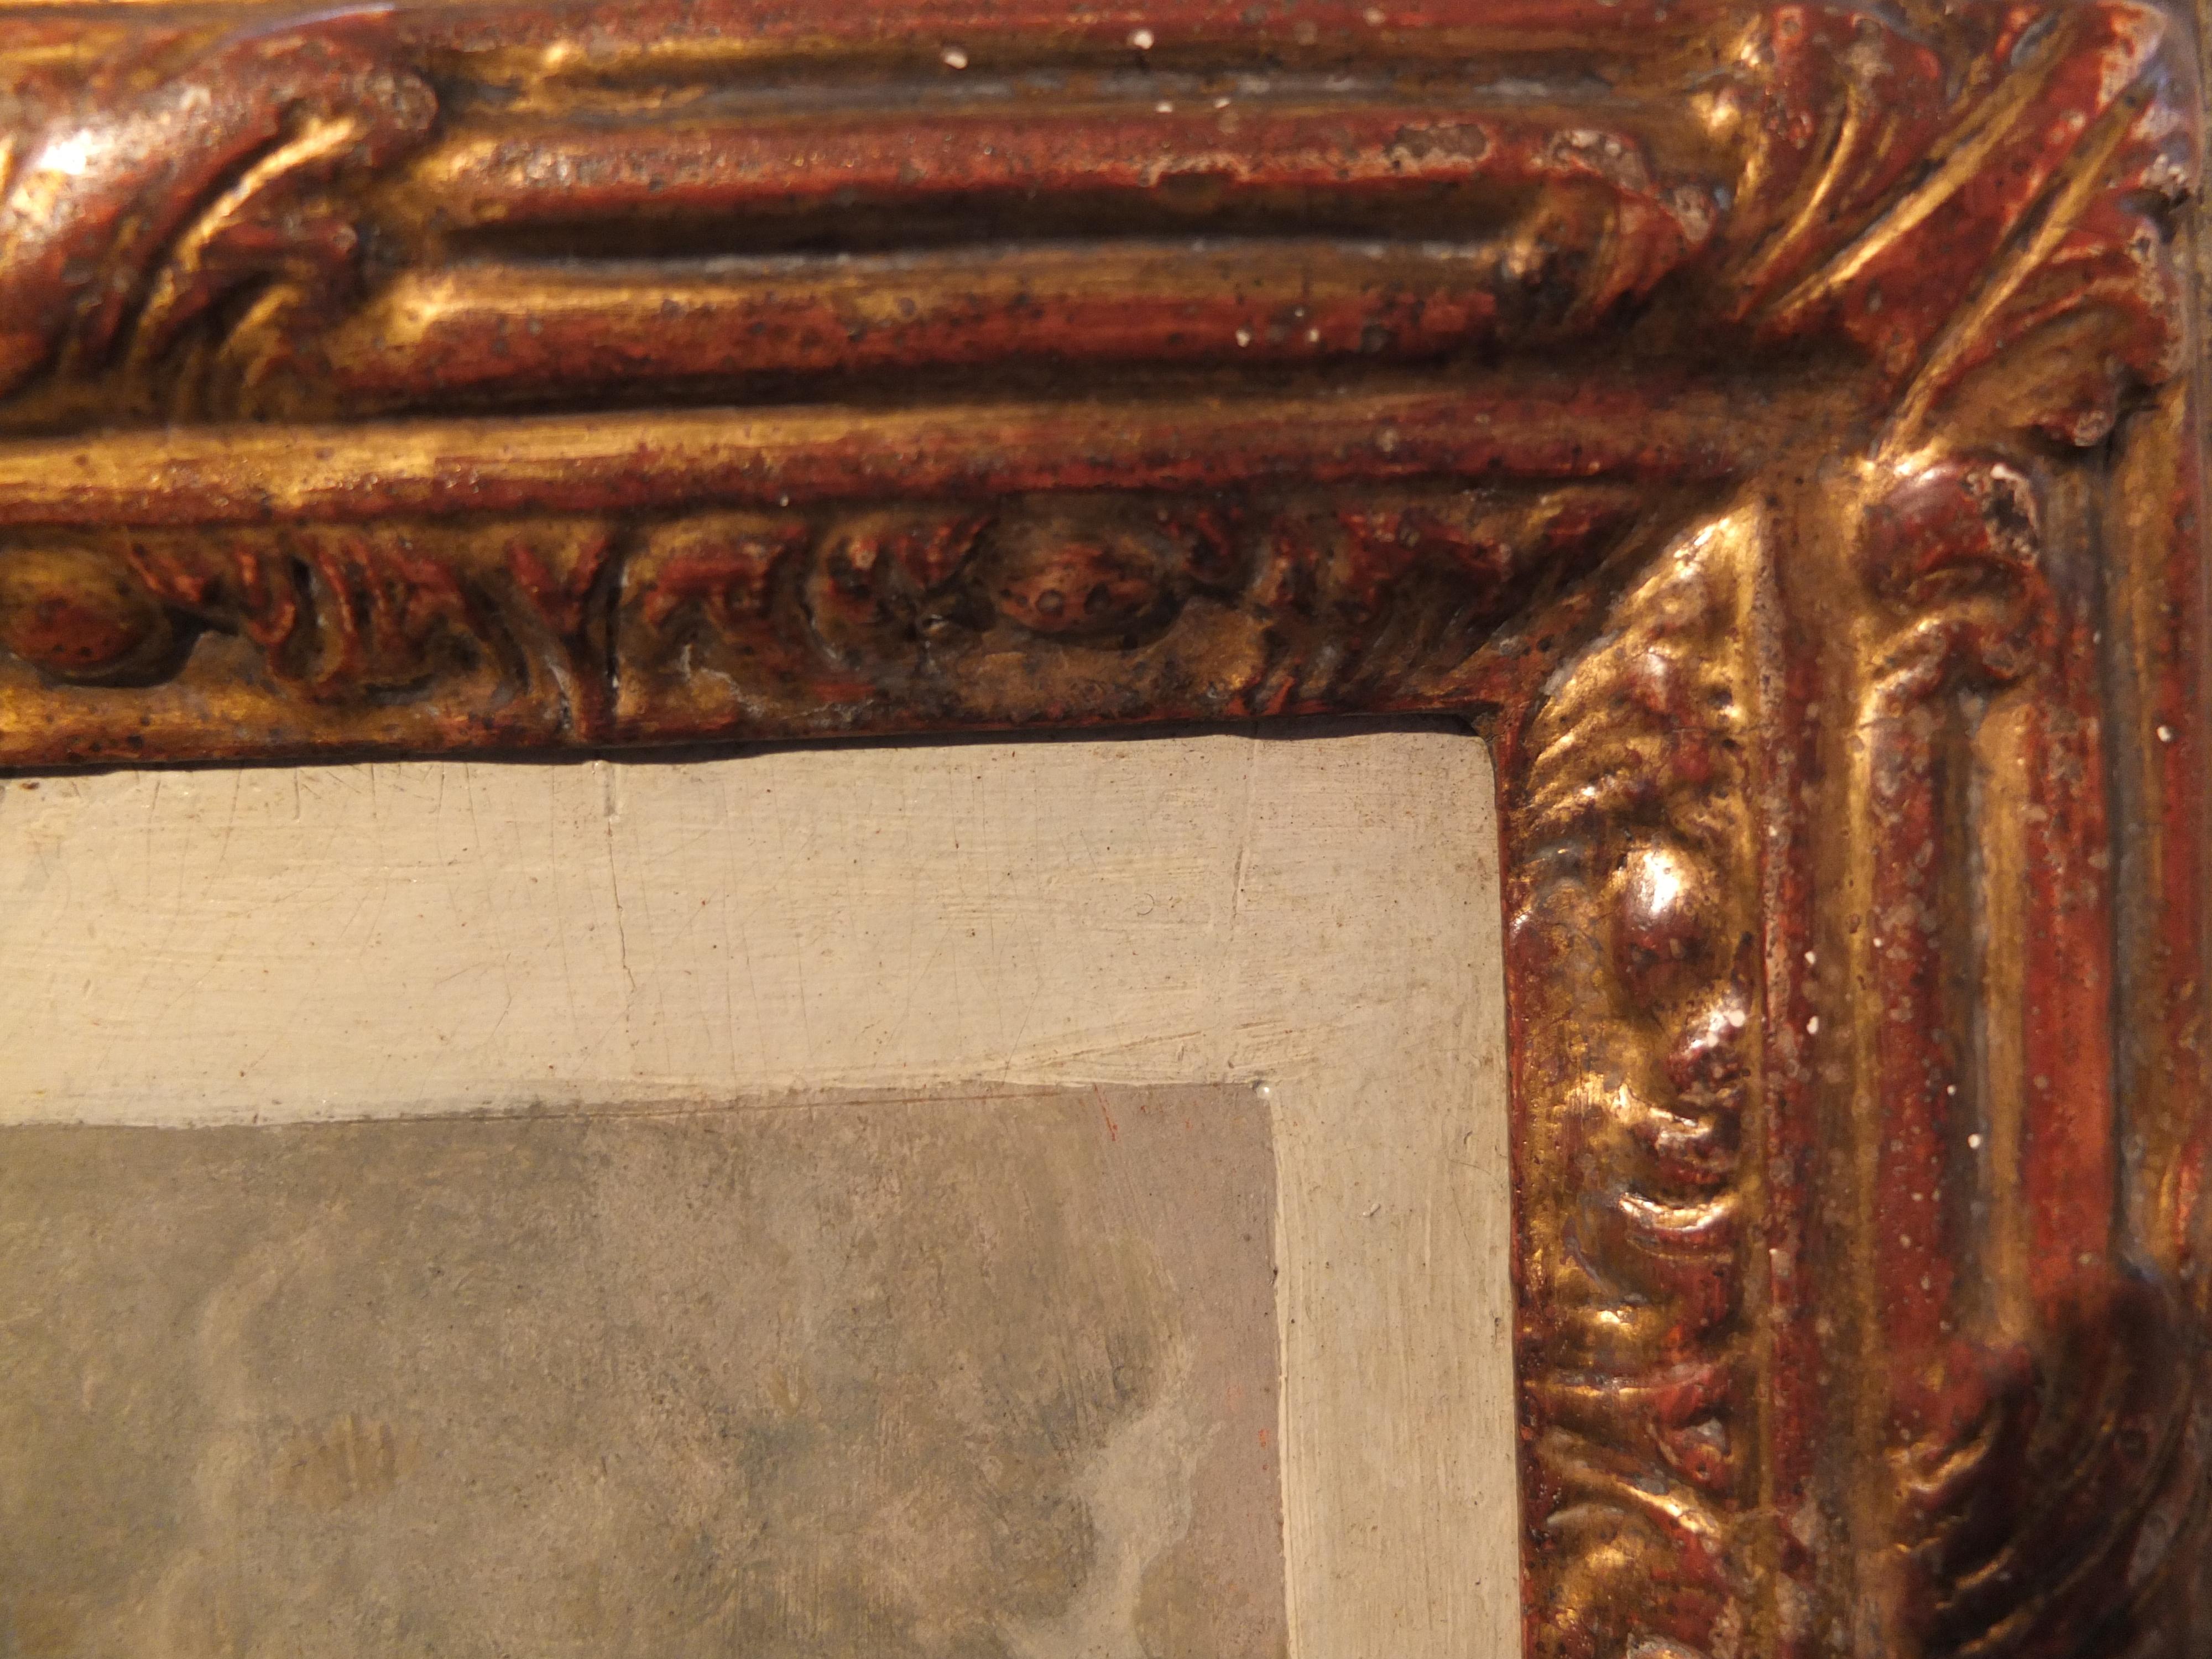 Nach einem Kupferstich (46 x 34 cm) von Gilles Rousselet nach Van Dyck, ca. 1640 Paris.  
Öl auf Karton, 44 x 35 cm
Trompe-l'oeils sind Bilder, deren abgebildete Gegenstände so naturalistisch gemalt sind, dass der Betrachter sie als tatsächlich